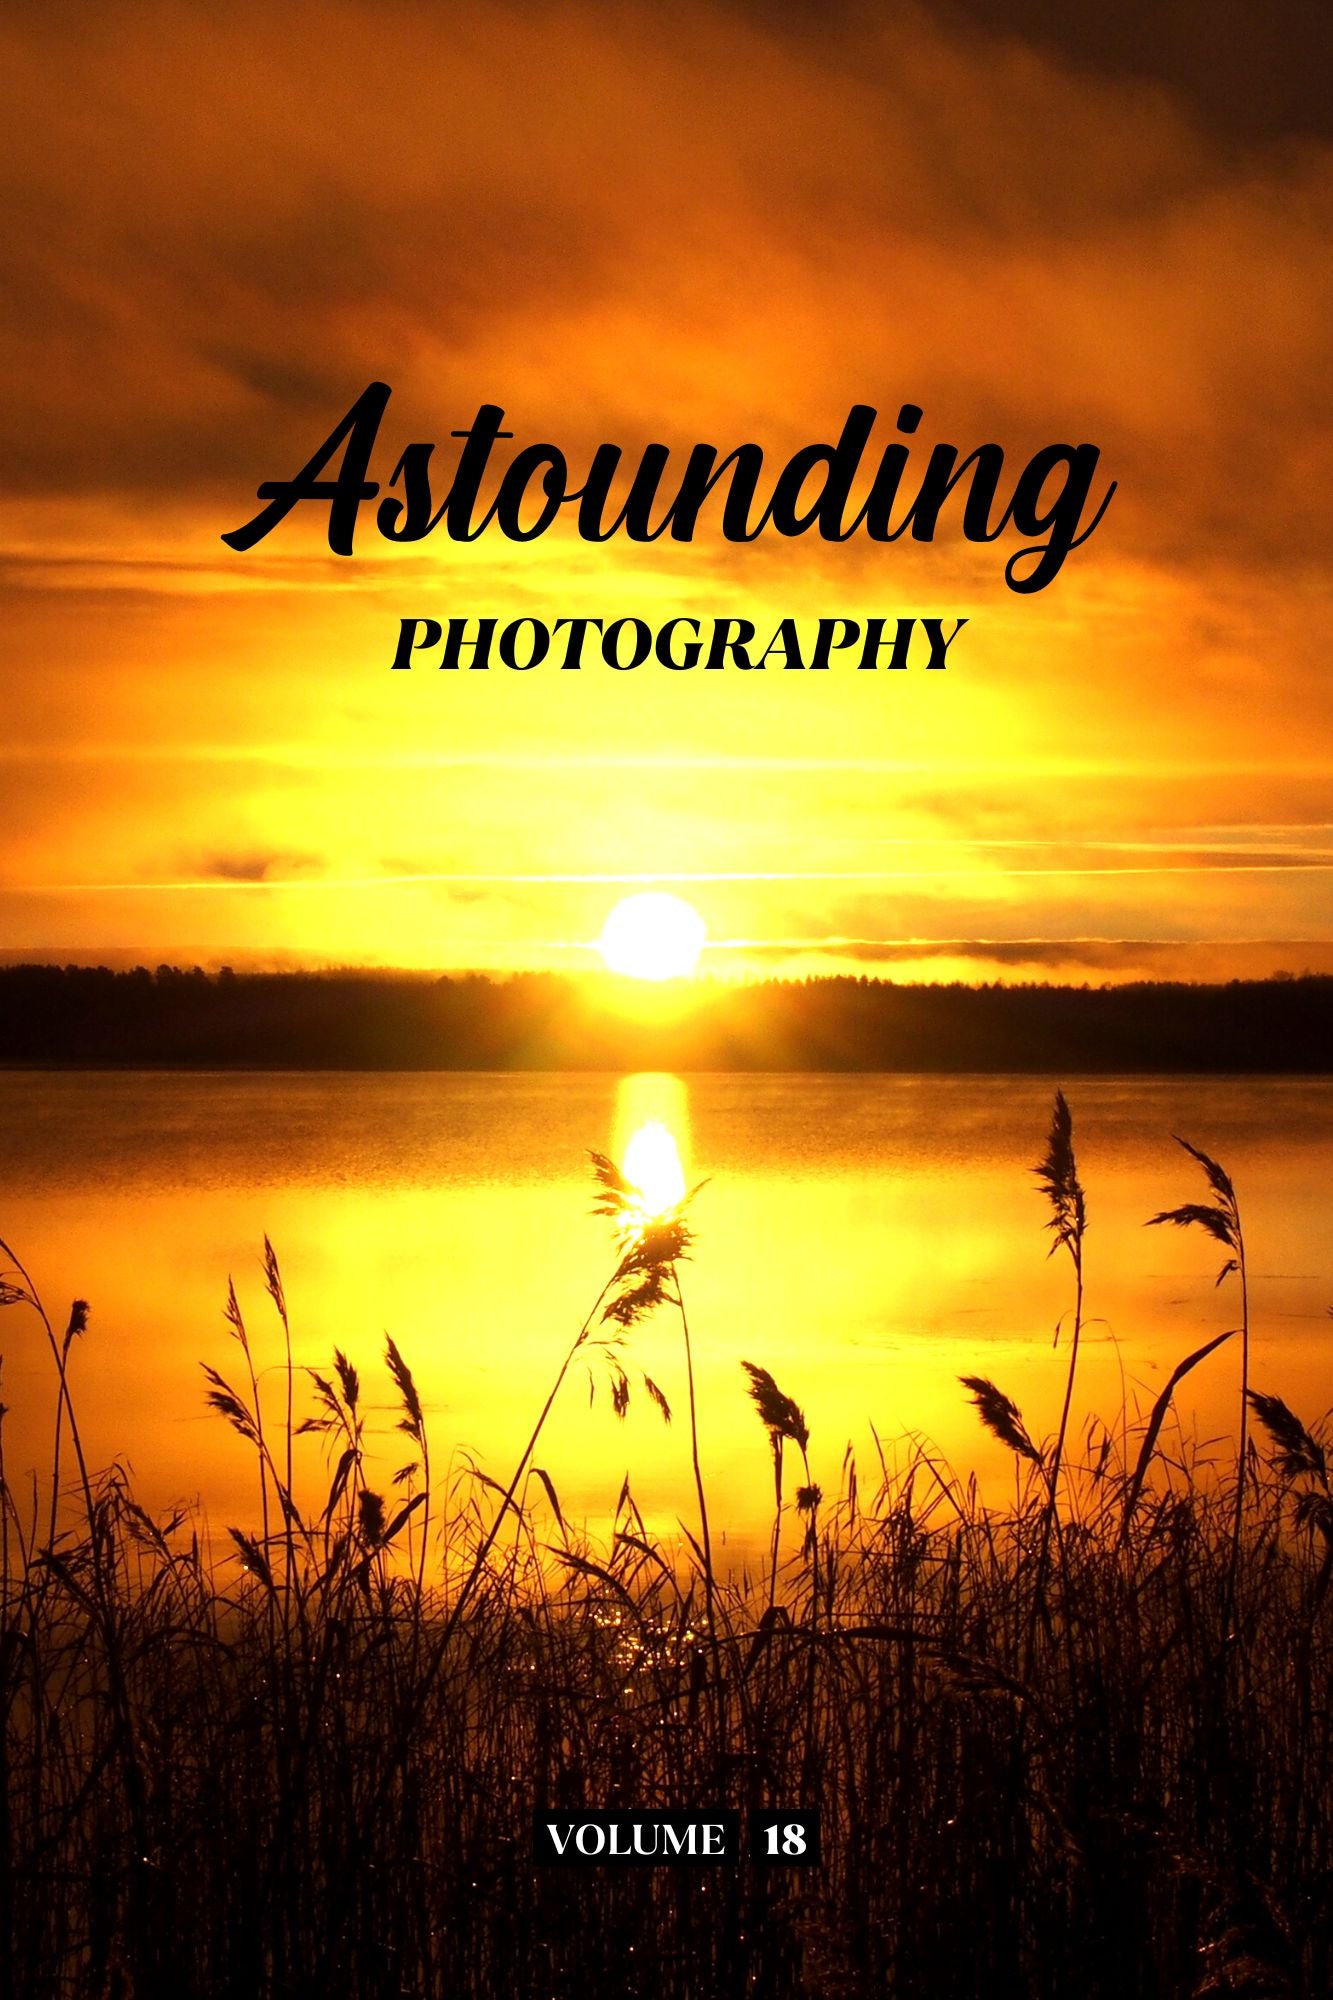 Astounding Photography Volume 18 (Physical Book Pre-Order)